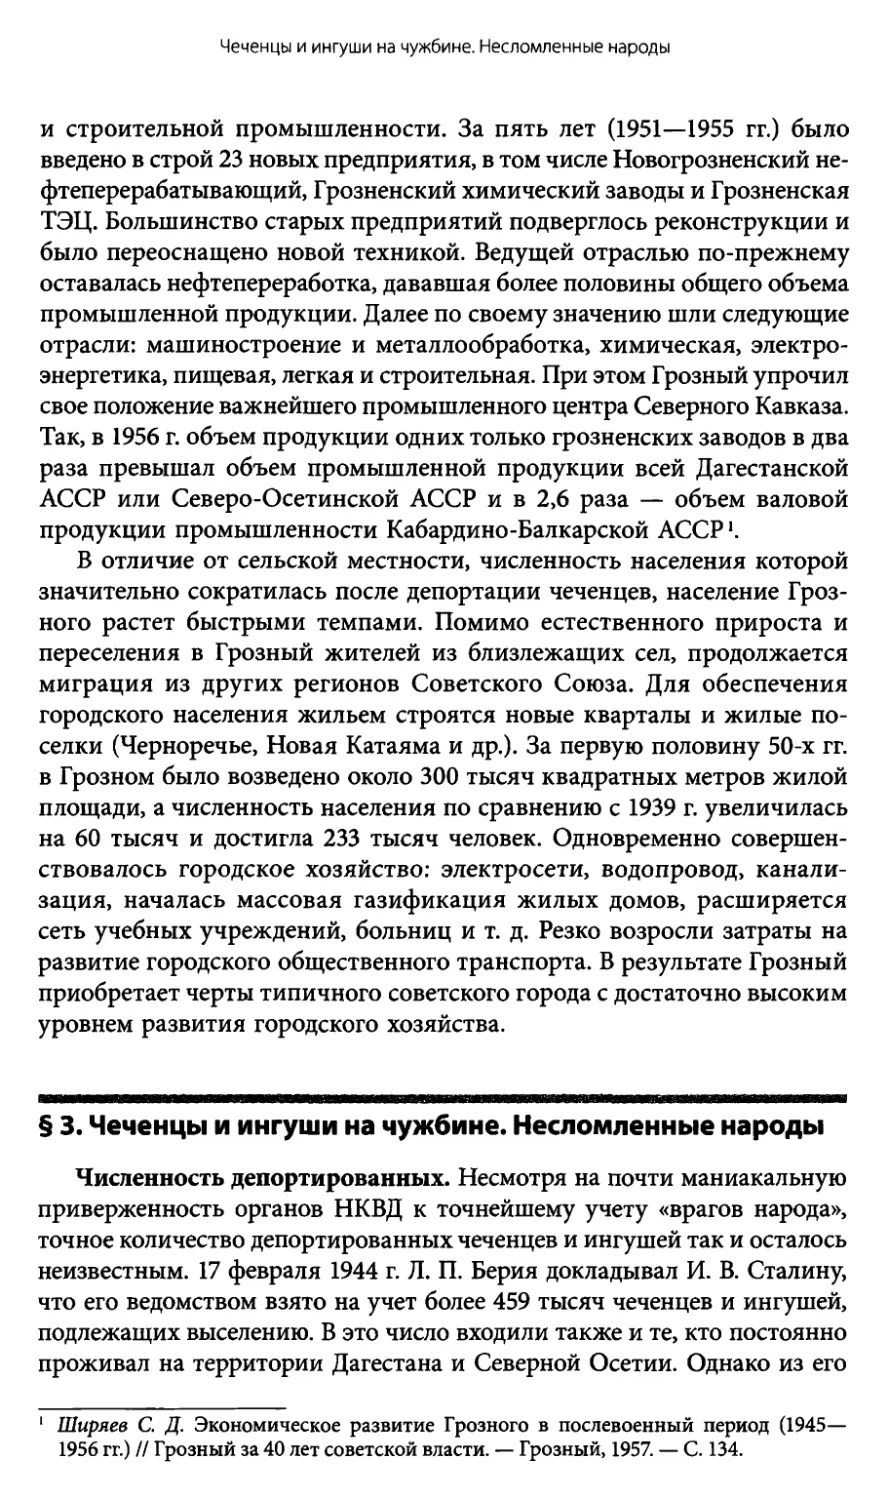 § 3. Чеченцы и ингуши на чужбине. Несломленные народы